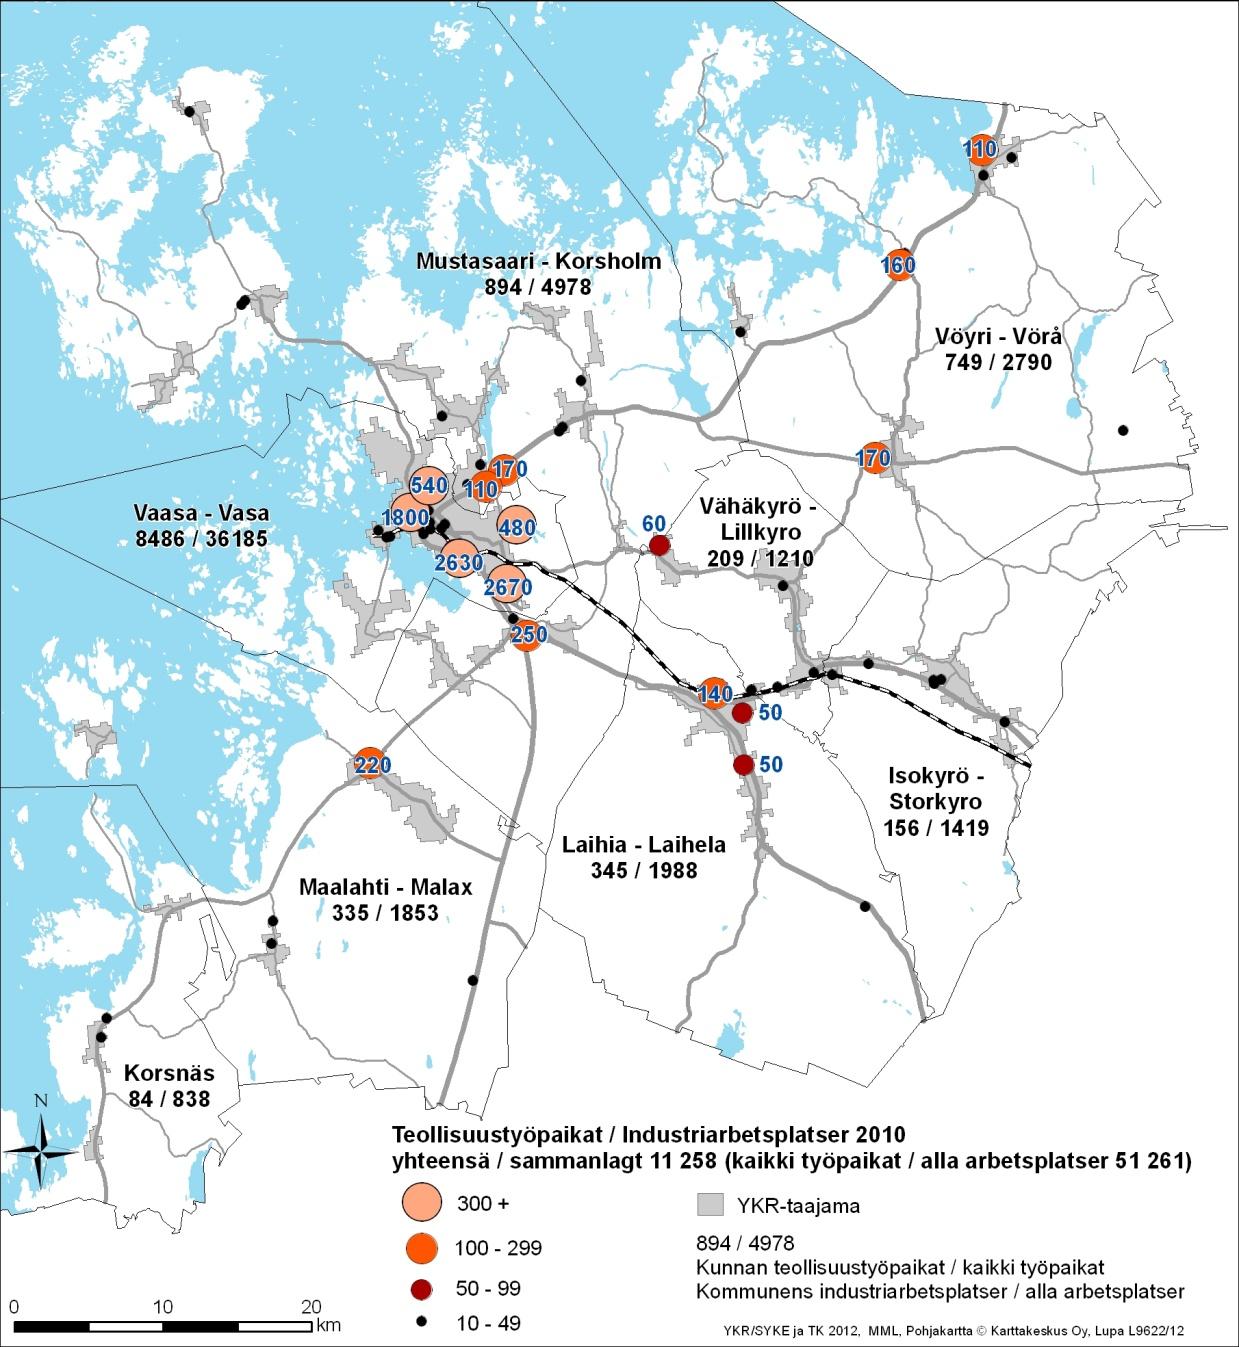 TYÖPAIKAT ARBETSPLATSER Vaasan seudulle on keskittynyt merkittävä osa Suomen ja koko Pohjoismaiden energiateknologiateollisuudesta.